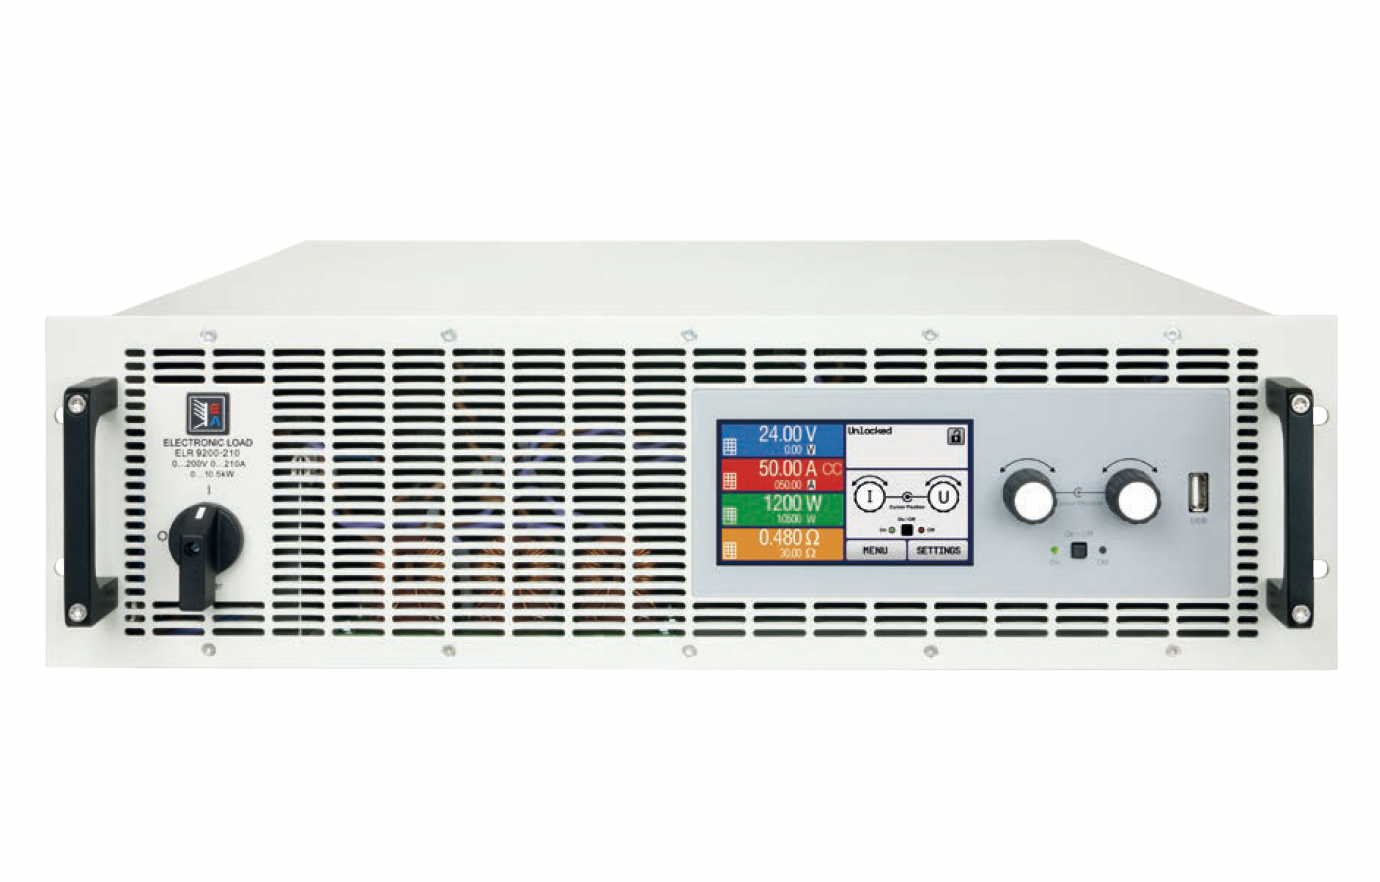 Программируемые электронные нагрузки
постоянного тока
EA Elektro-Automatik серии EA-ELR 9000
 с мощностью до 10,5 кВт